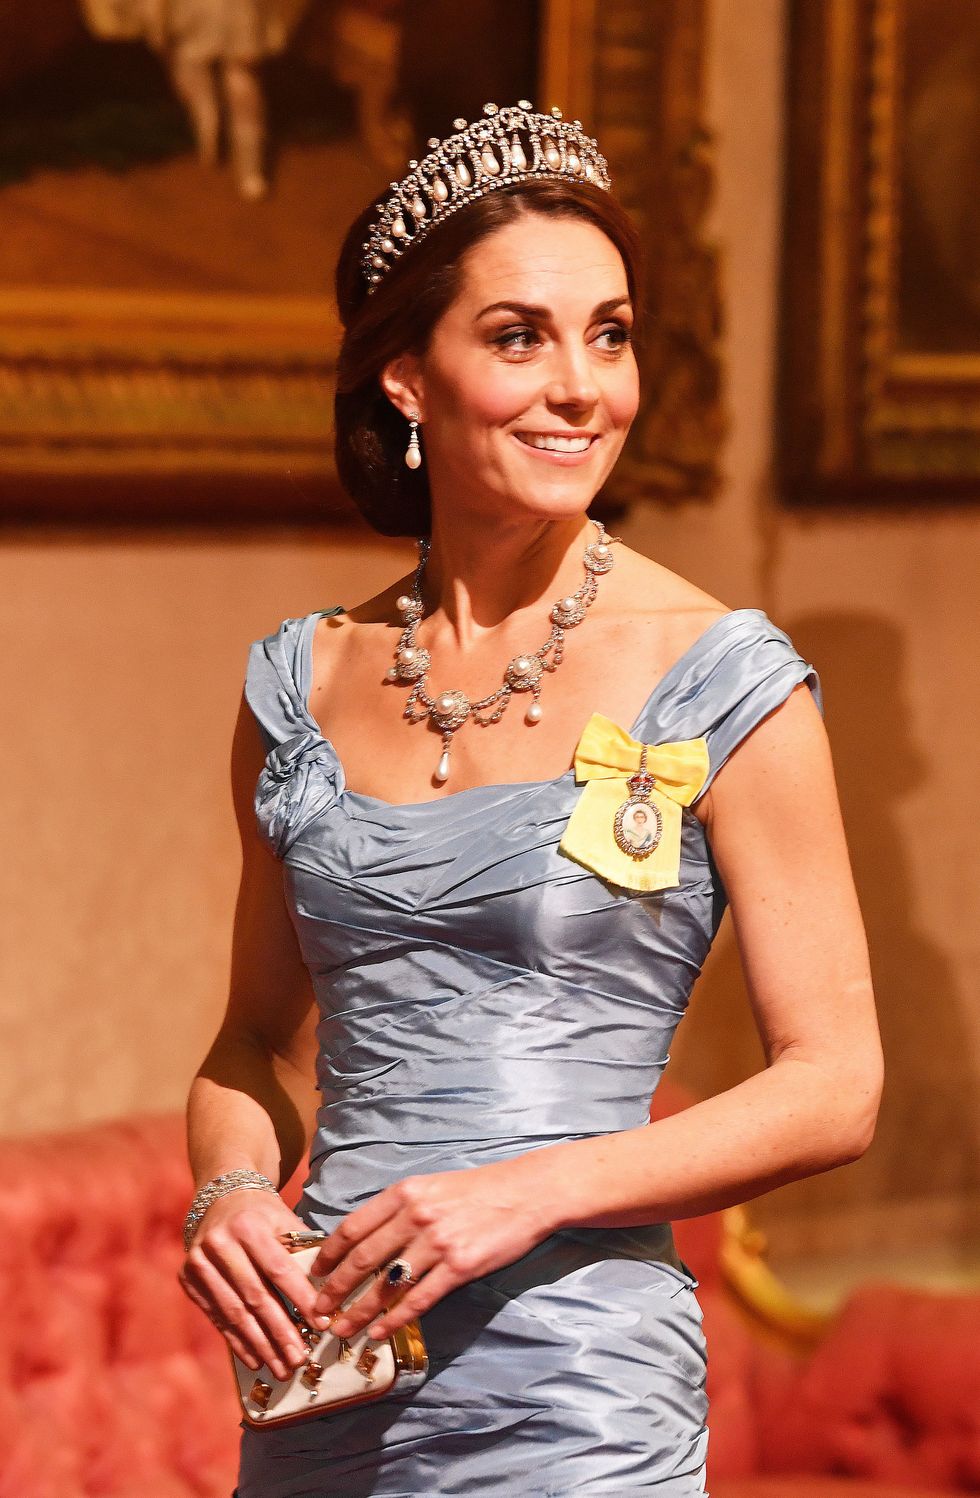 kate middleton duchess of cambridge wearing a tiara